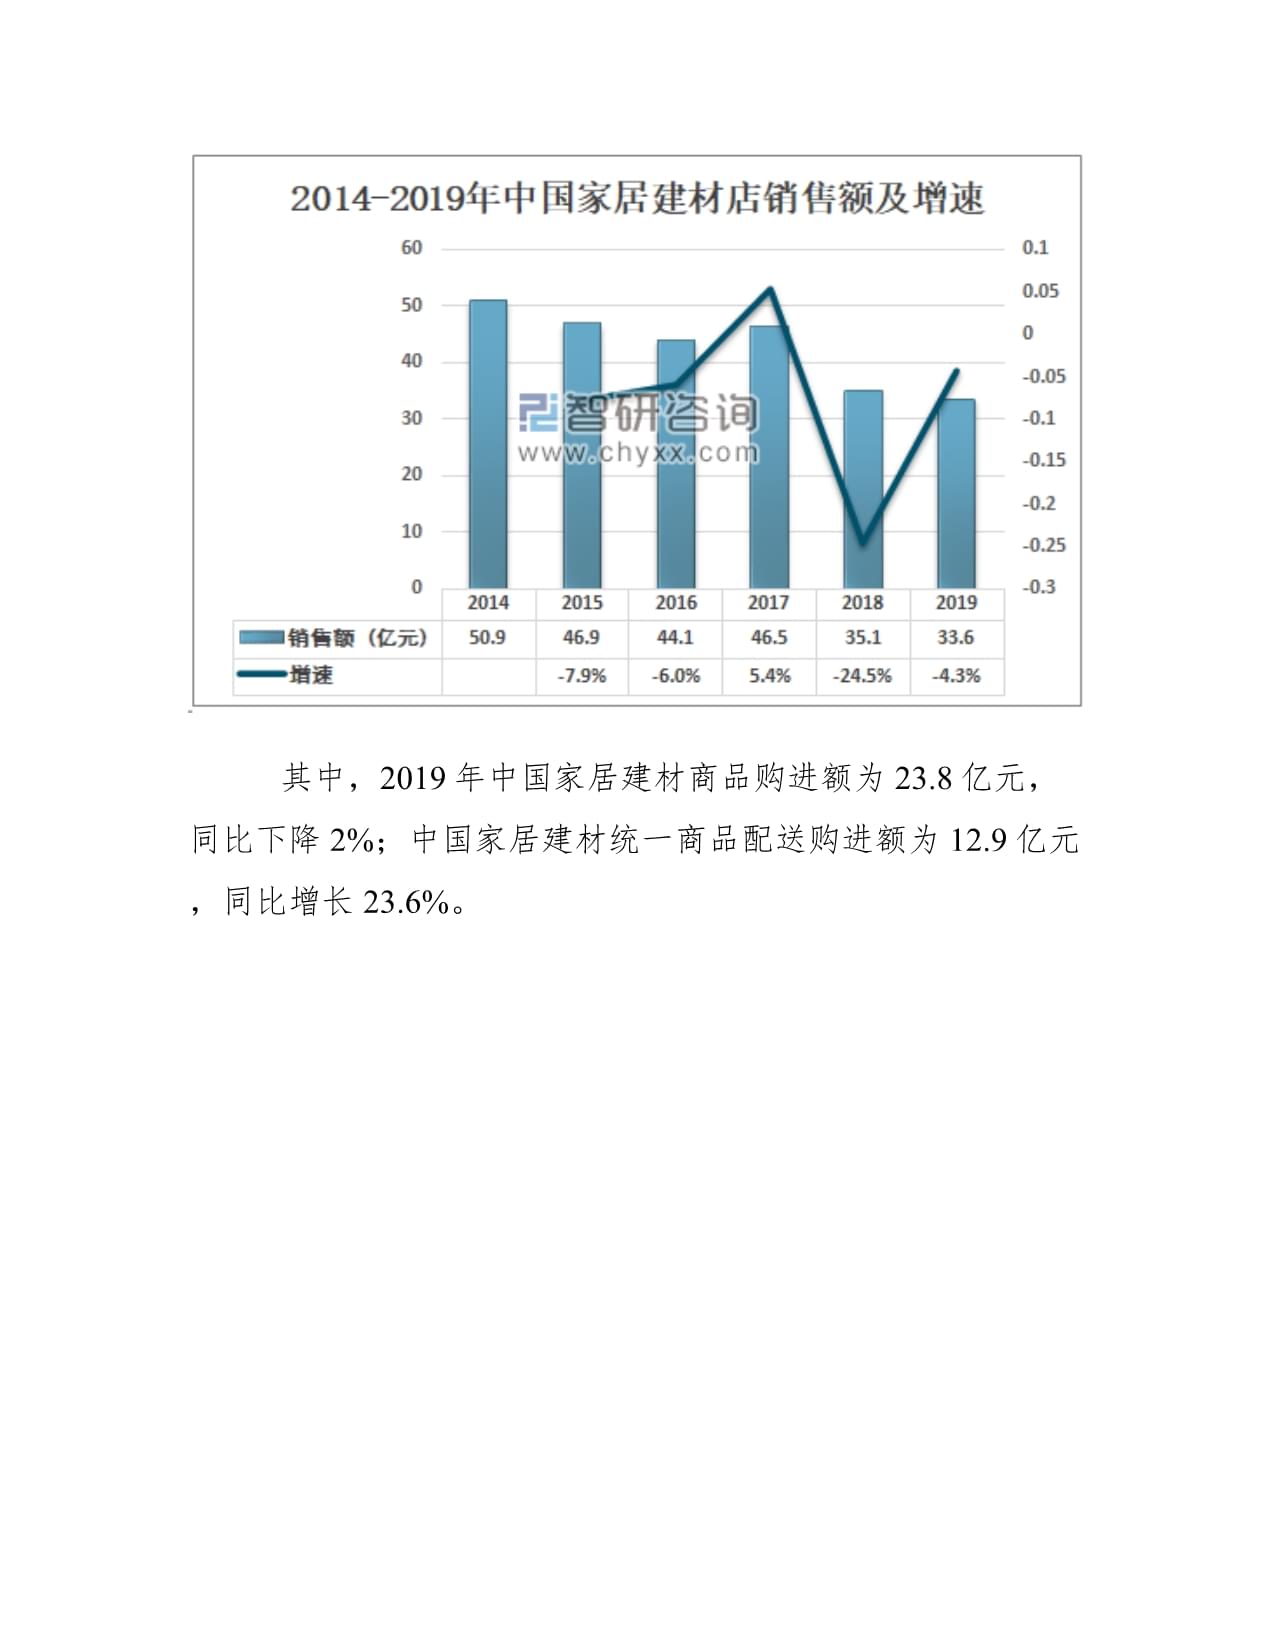 中国家居建材店数量、销售额及家居建材店发展问题及对策分析图